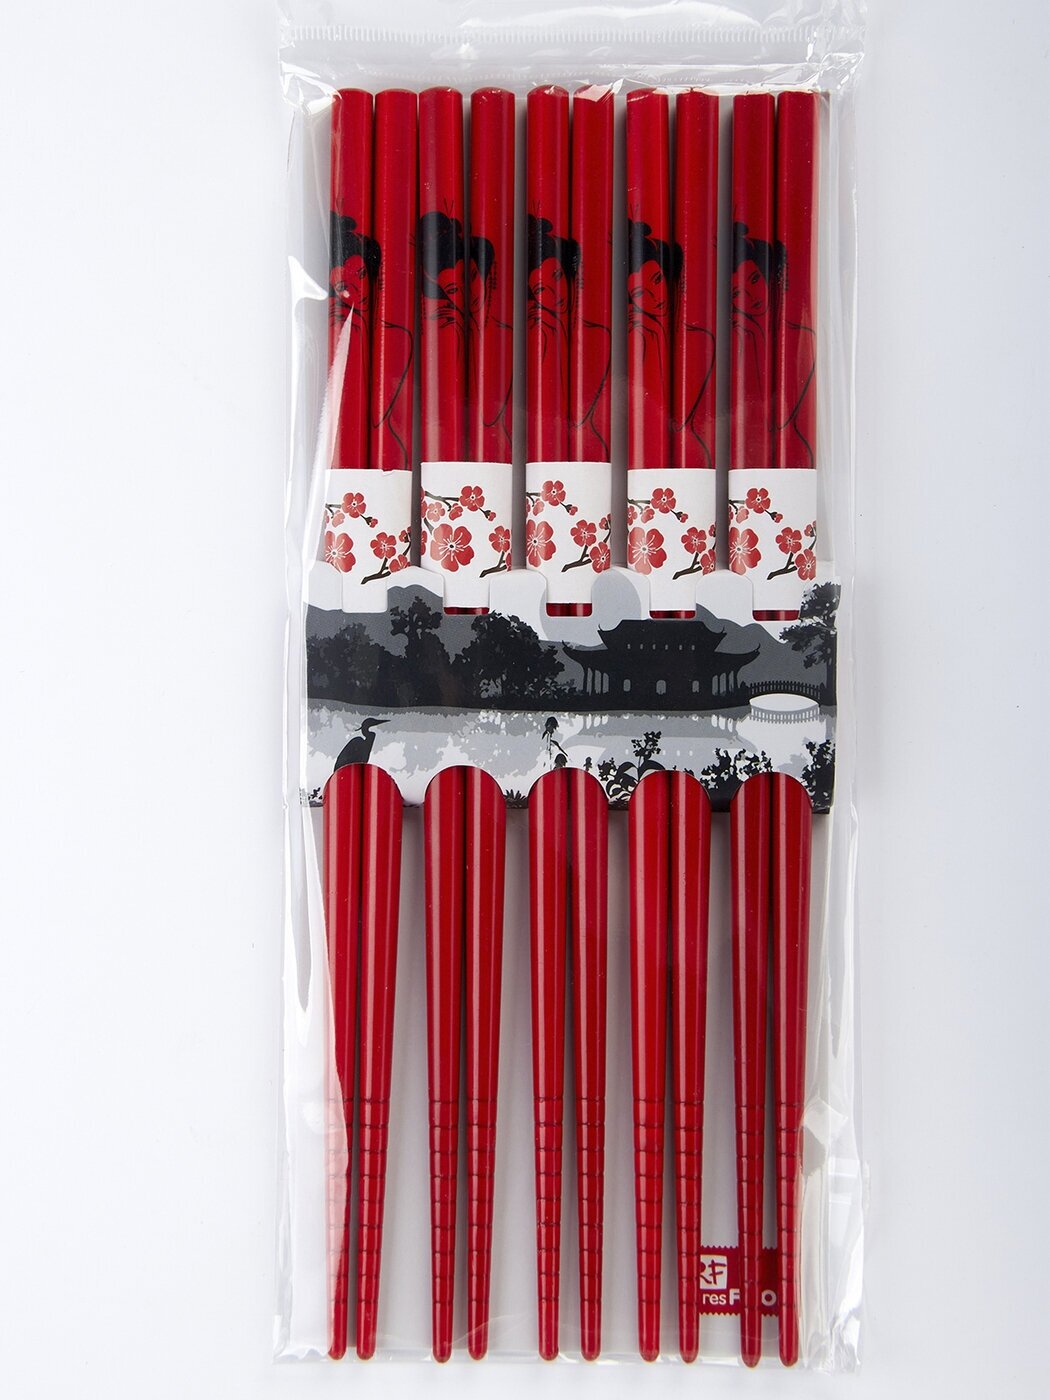 Палочки бамбуковые красные Премиум Resfood набор 10 шт. (5 пар)